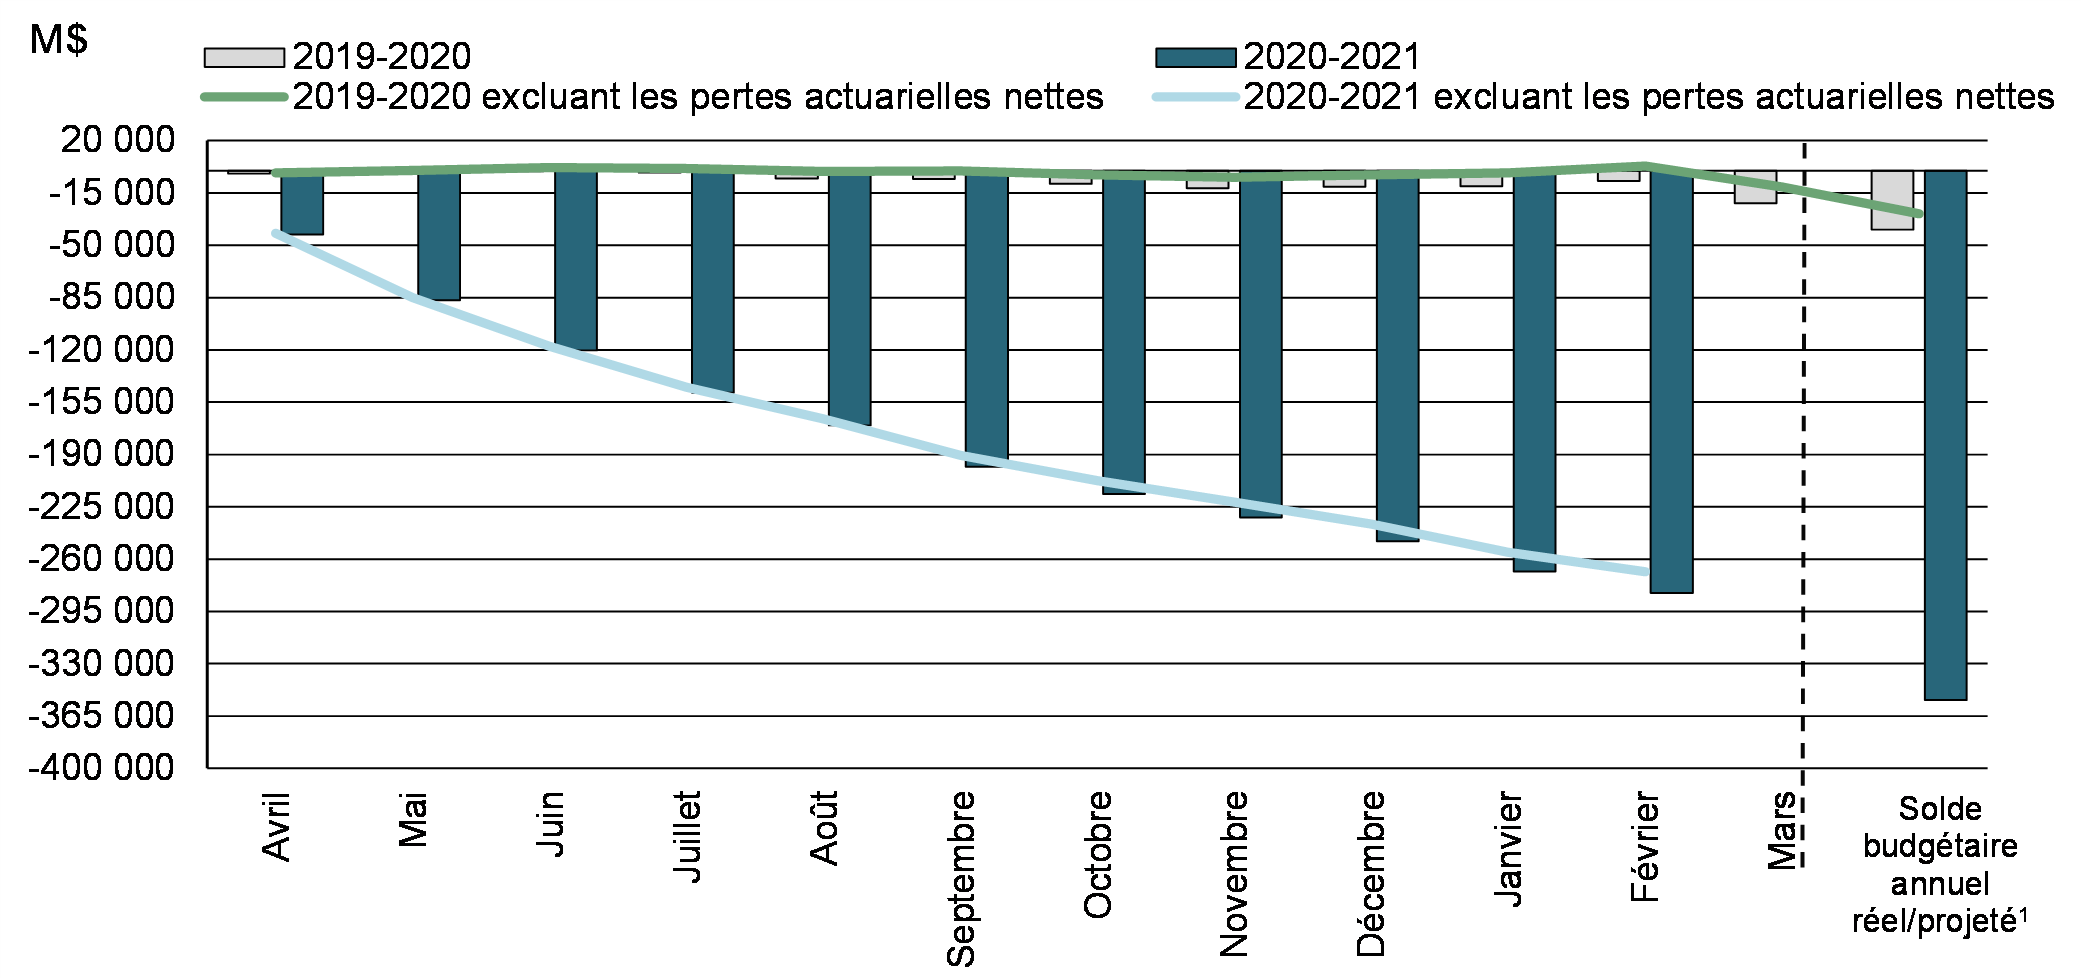 Graphique 2: Solde budgétaire cumulatif de l'exercice et solde budgétaire excluant les pertes actuarielles nettes